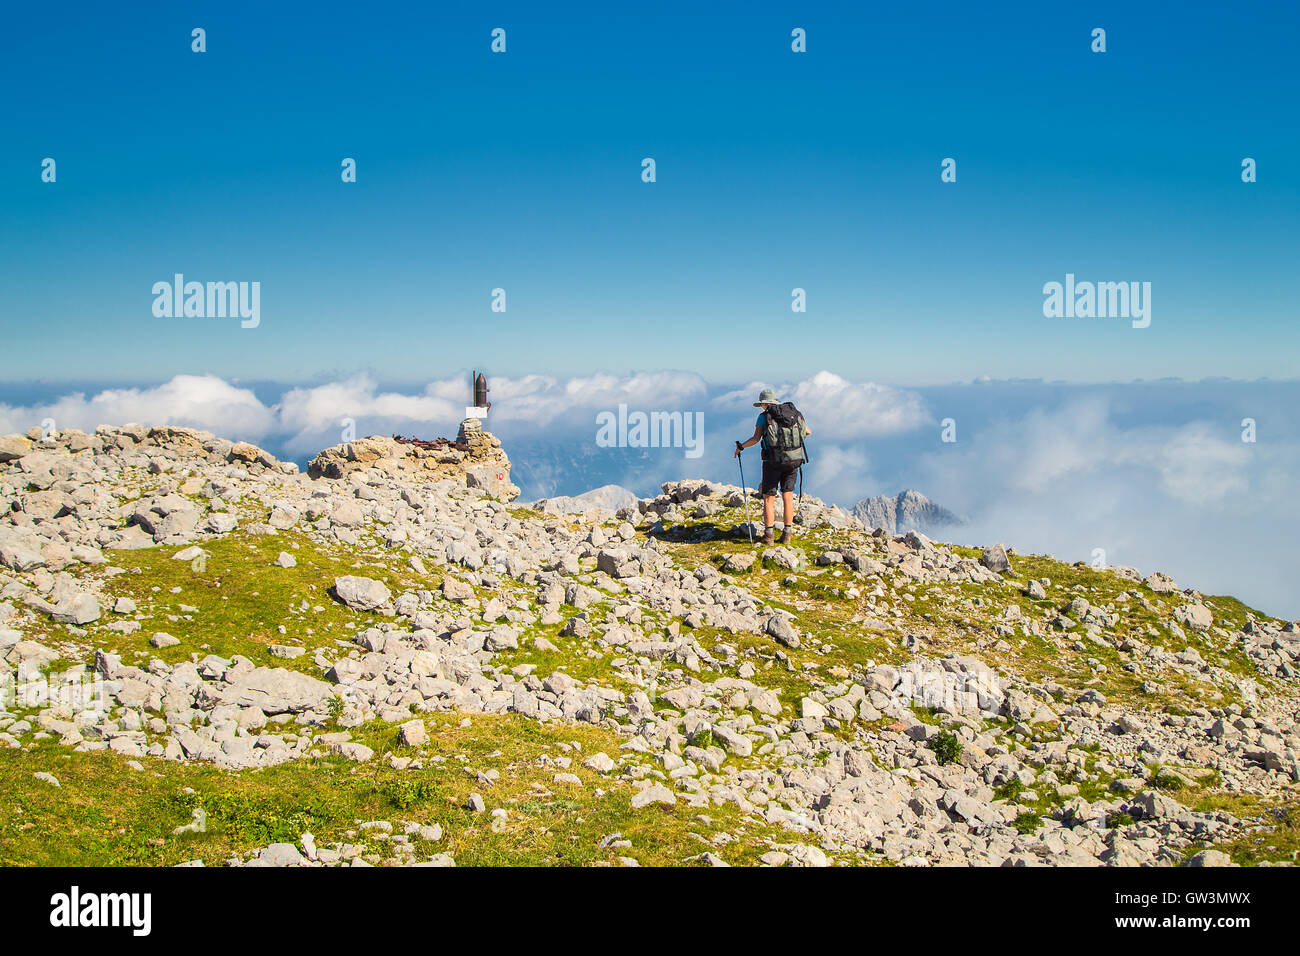 Mountaineer walking on the mountain Batognica, Slovenia Stock Photo